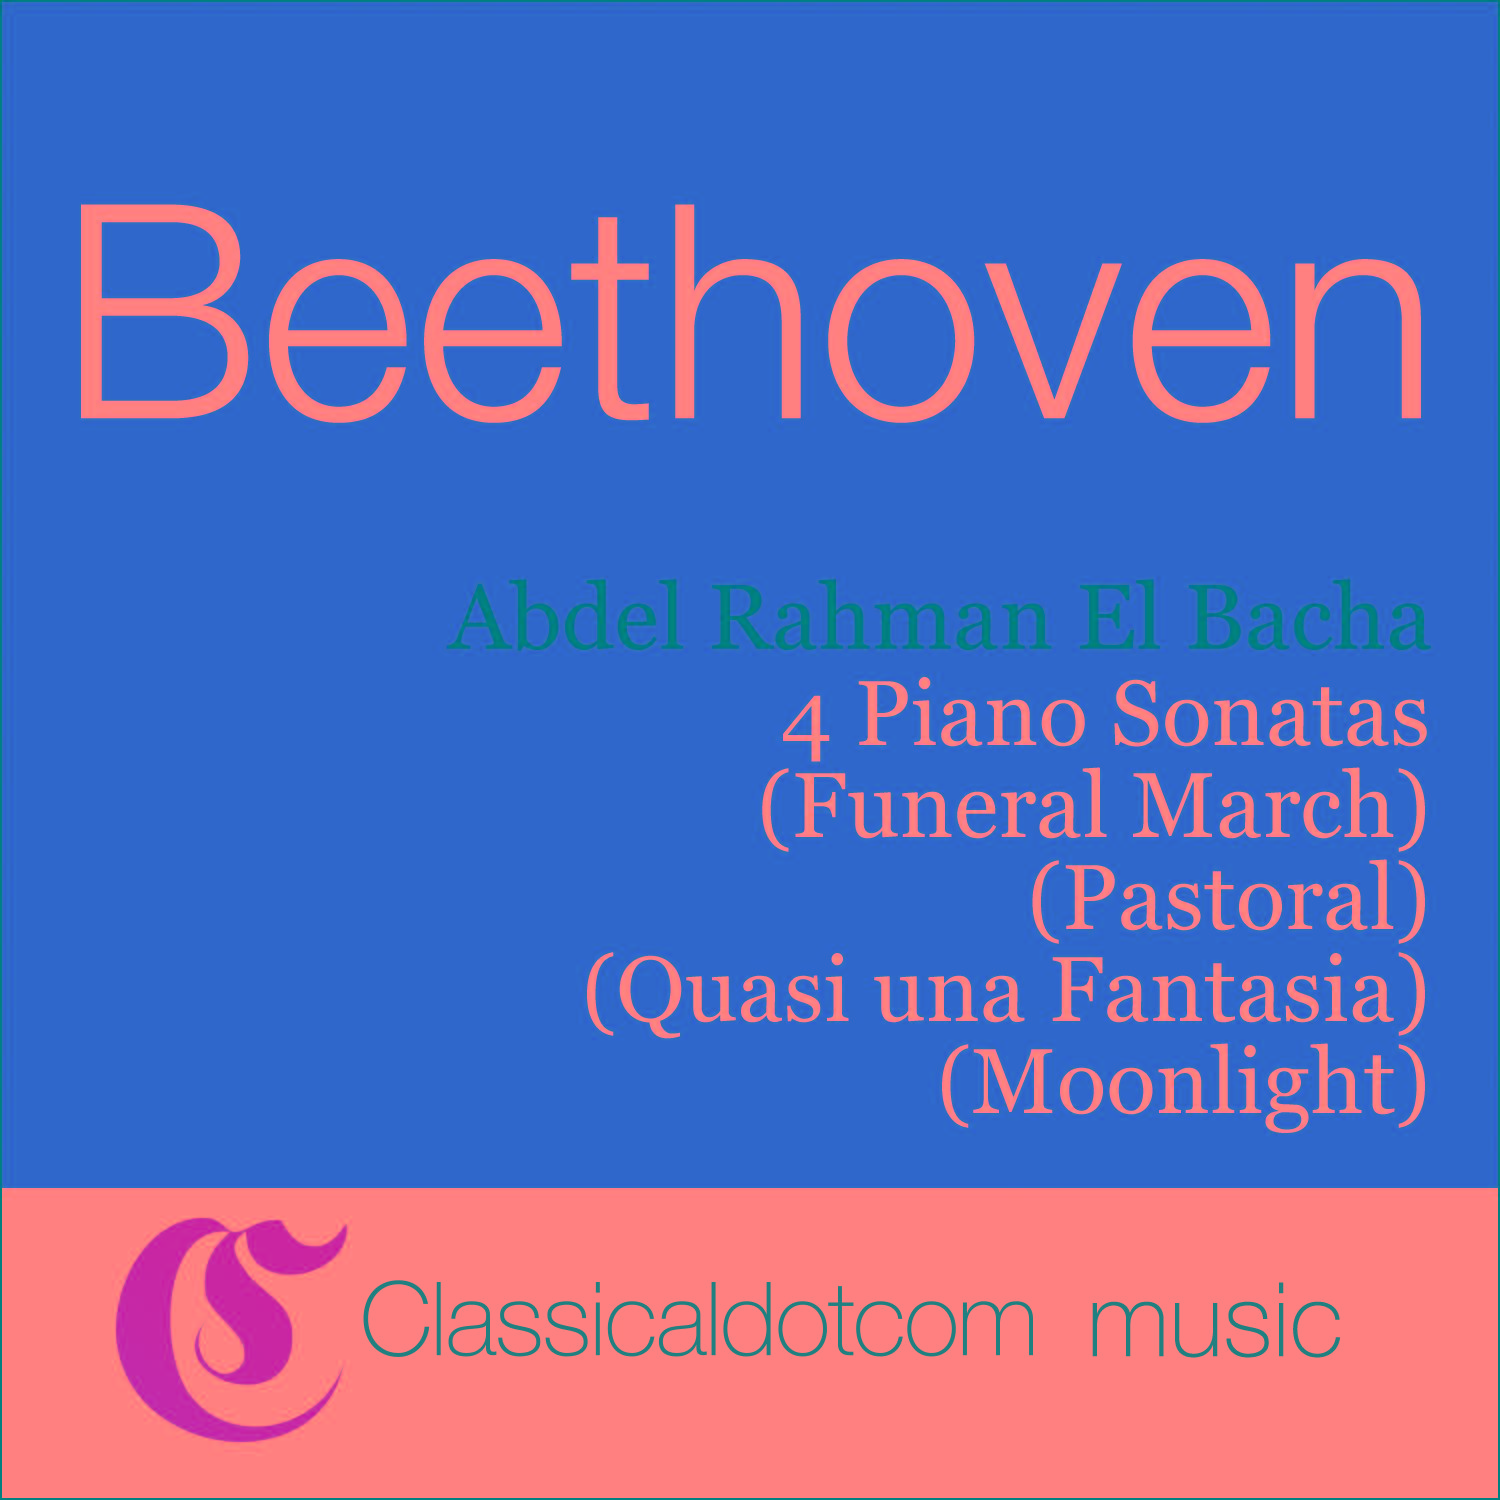 Piano Sonata No. 14 in C sharp minor, Op. 27 No. 2 (Moonlight) - Adagio sostenuto